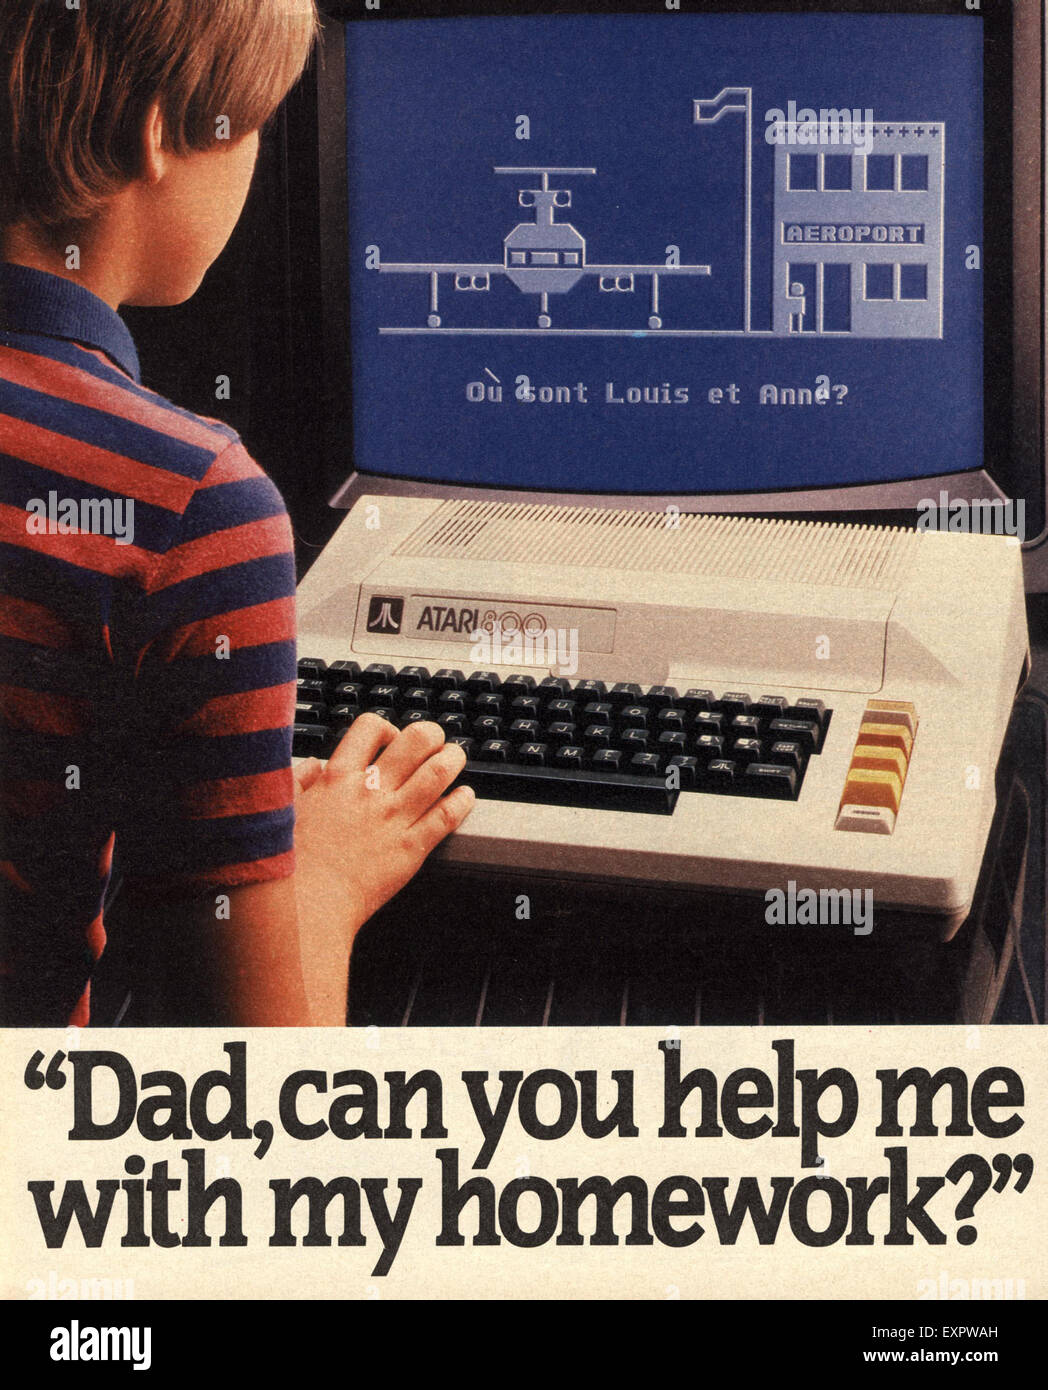 1980s UK Atari Magazine Advert Stock Photo